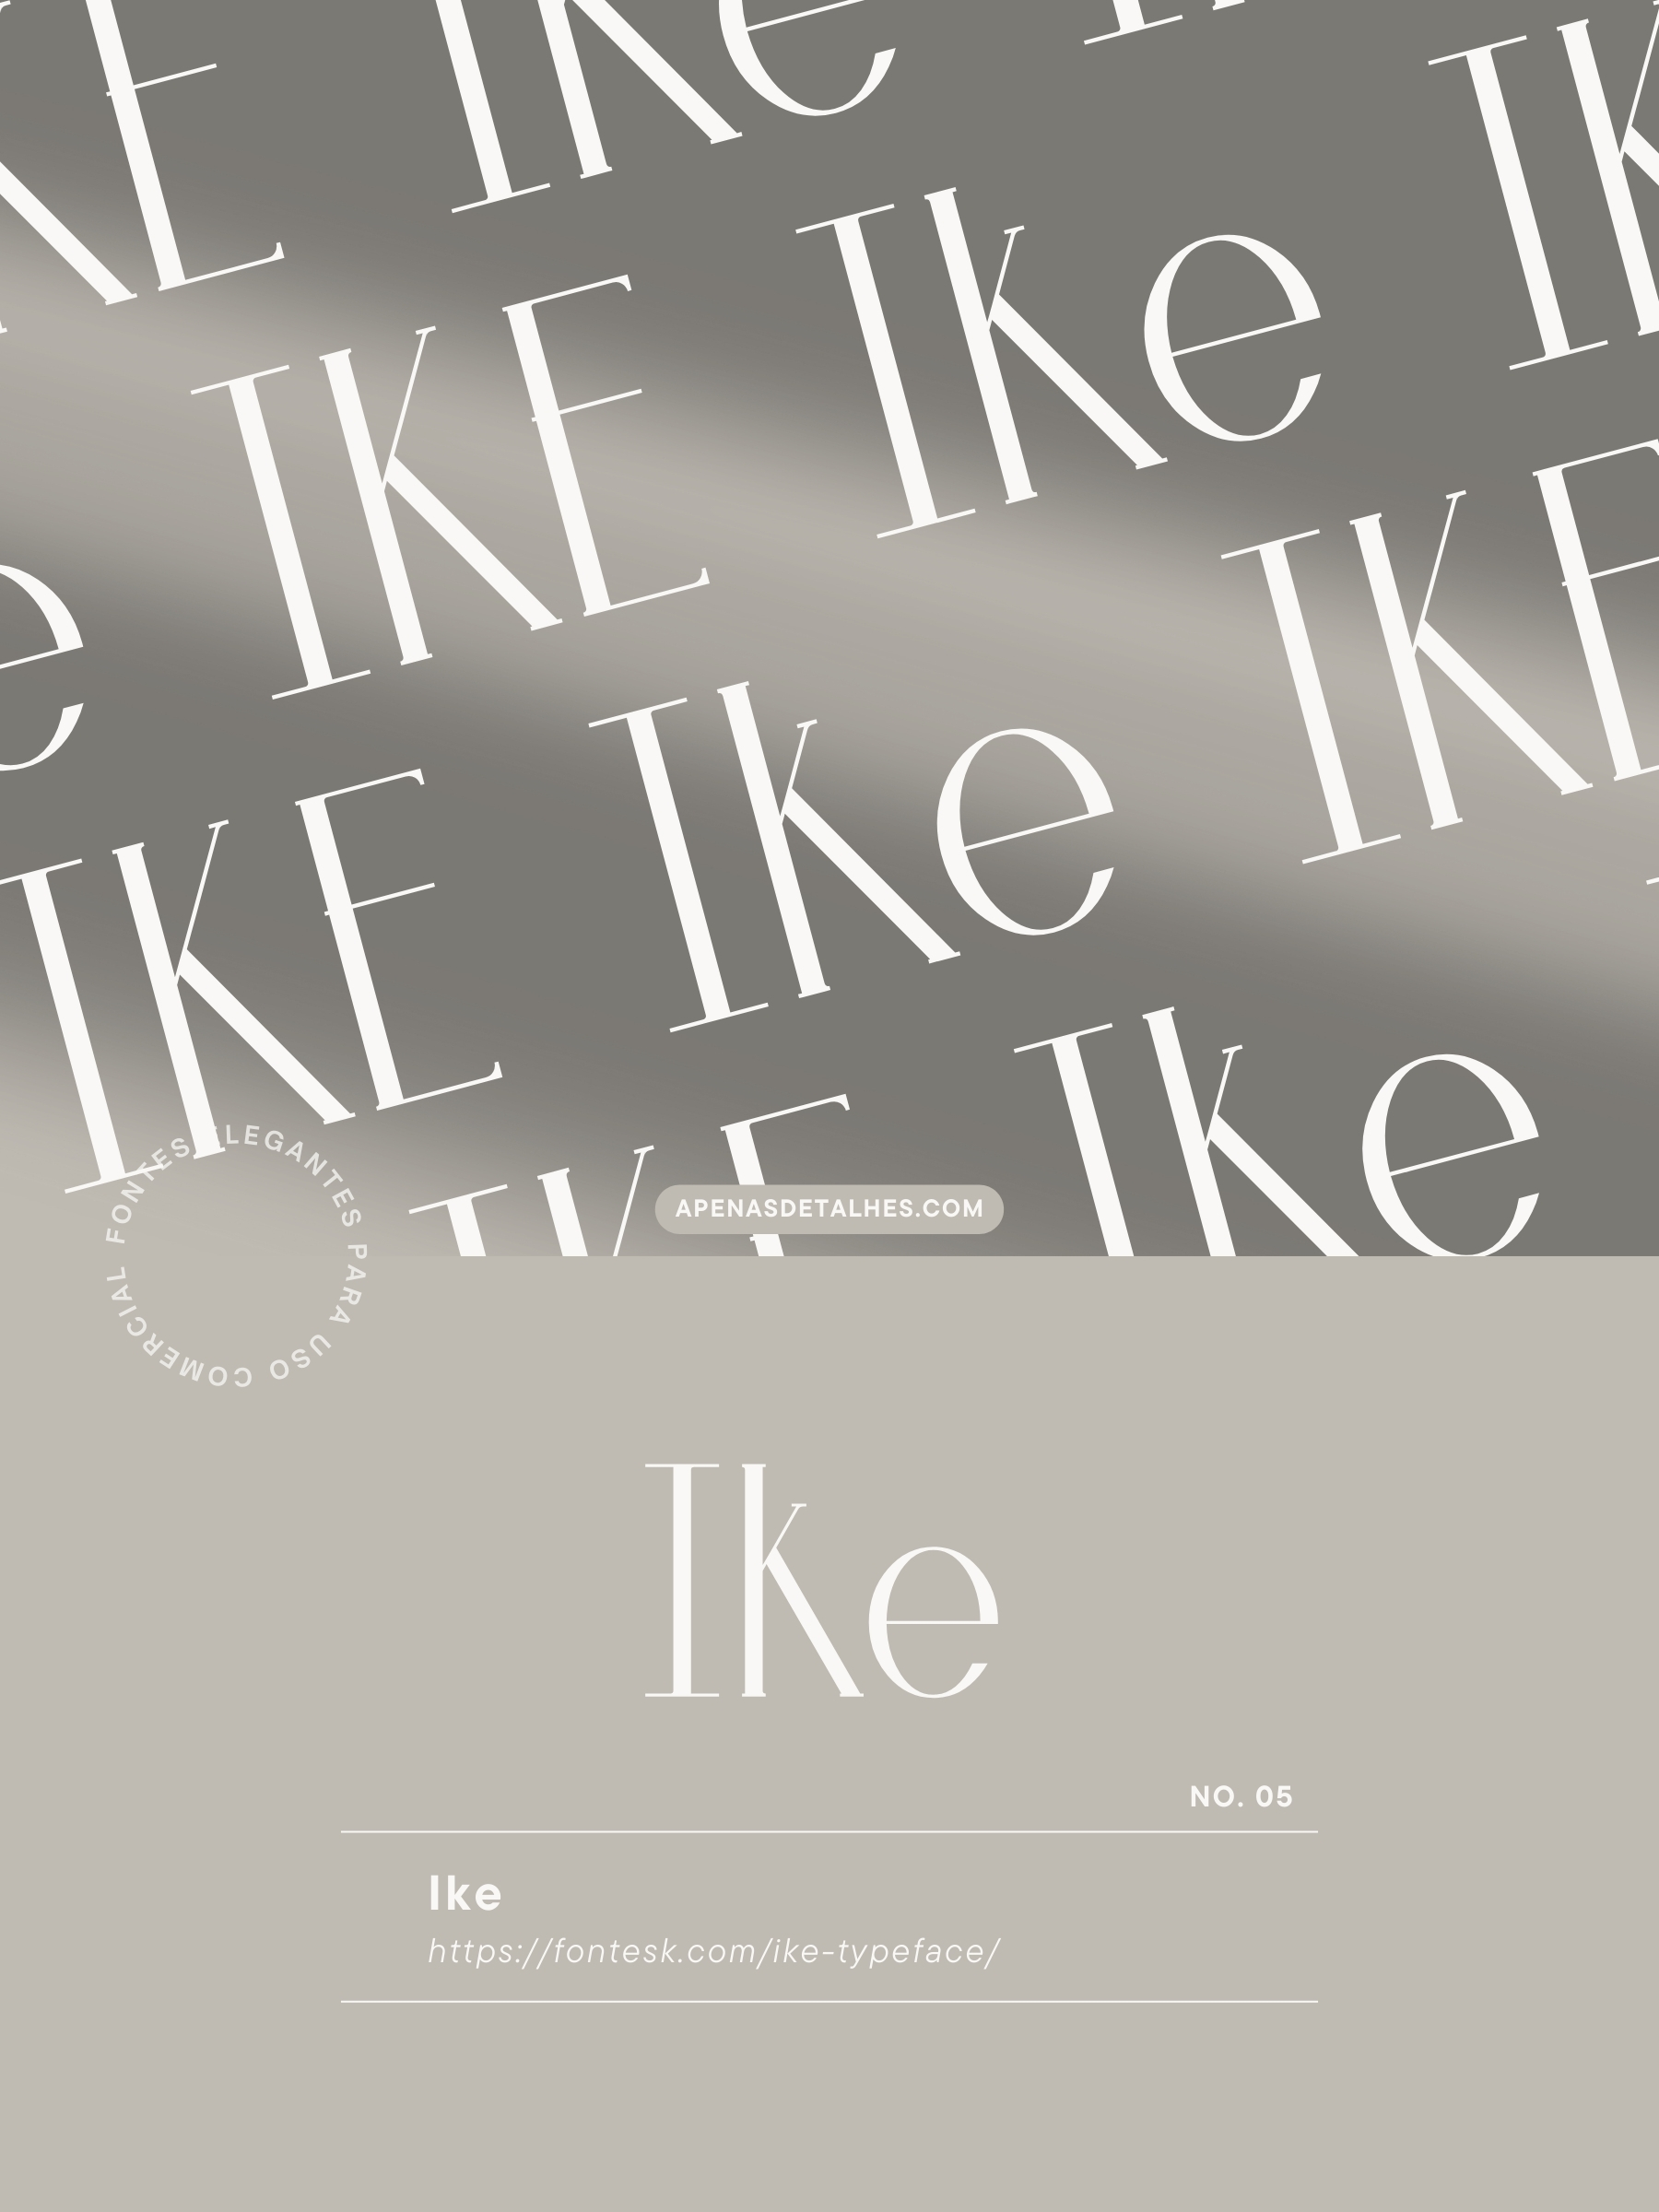 10 fontes elegantes e gratuitas para uso comercial - Ike